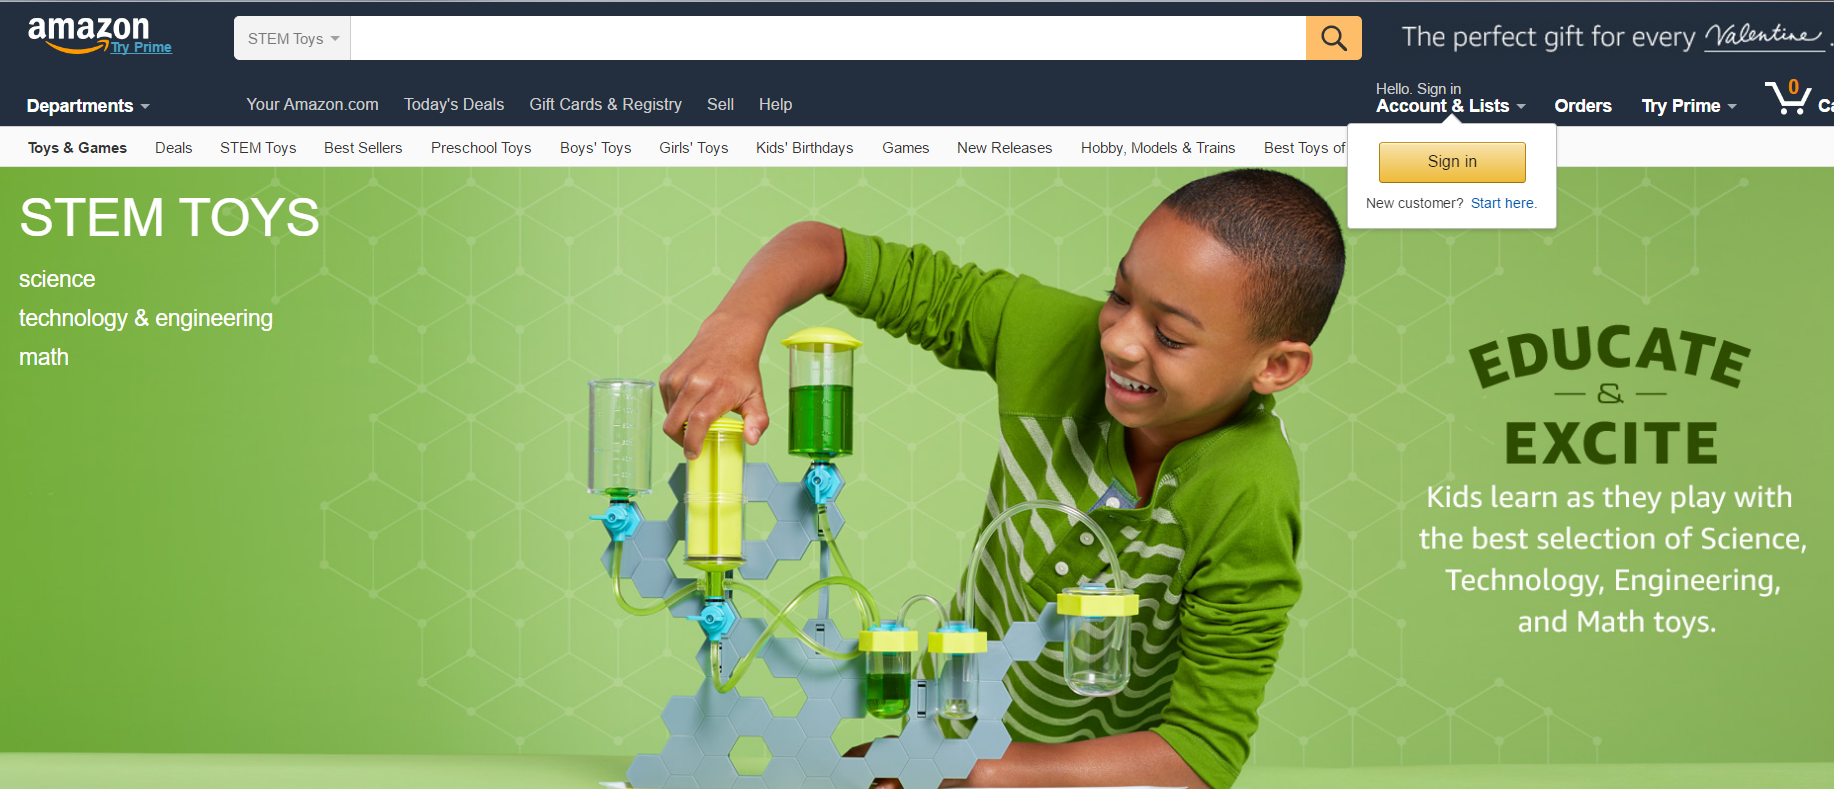  Amazon's Stem Toys Homepage 